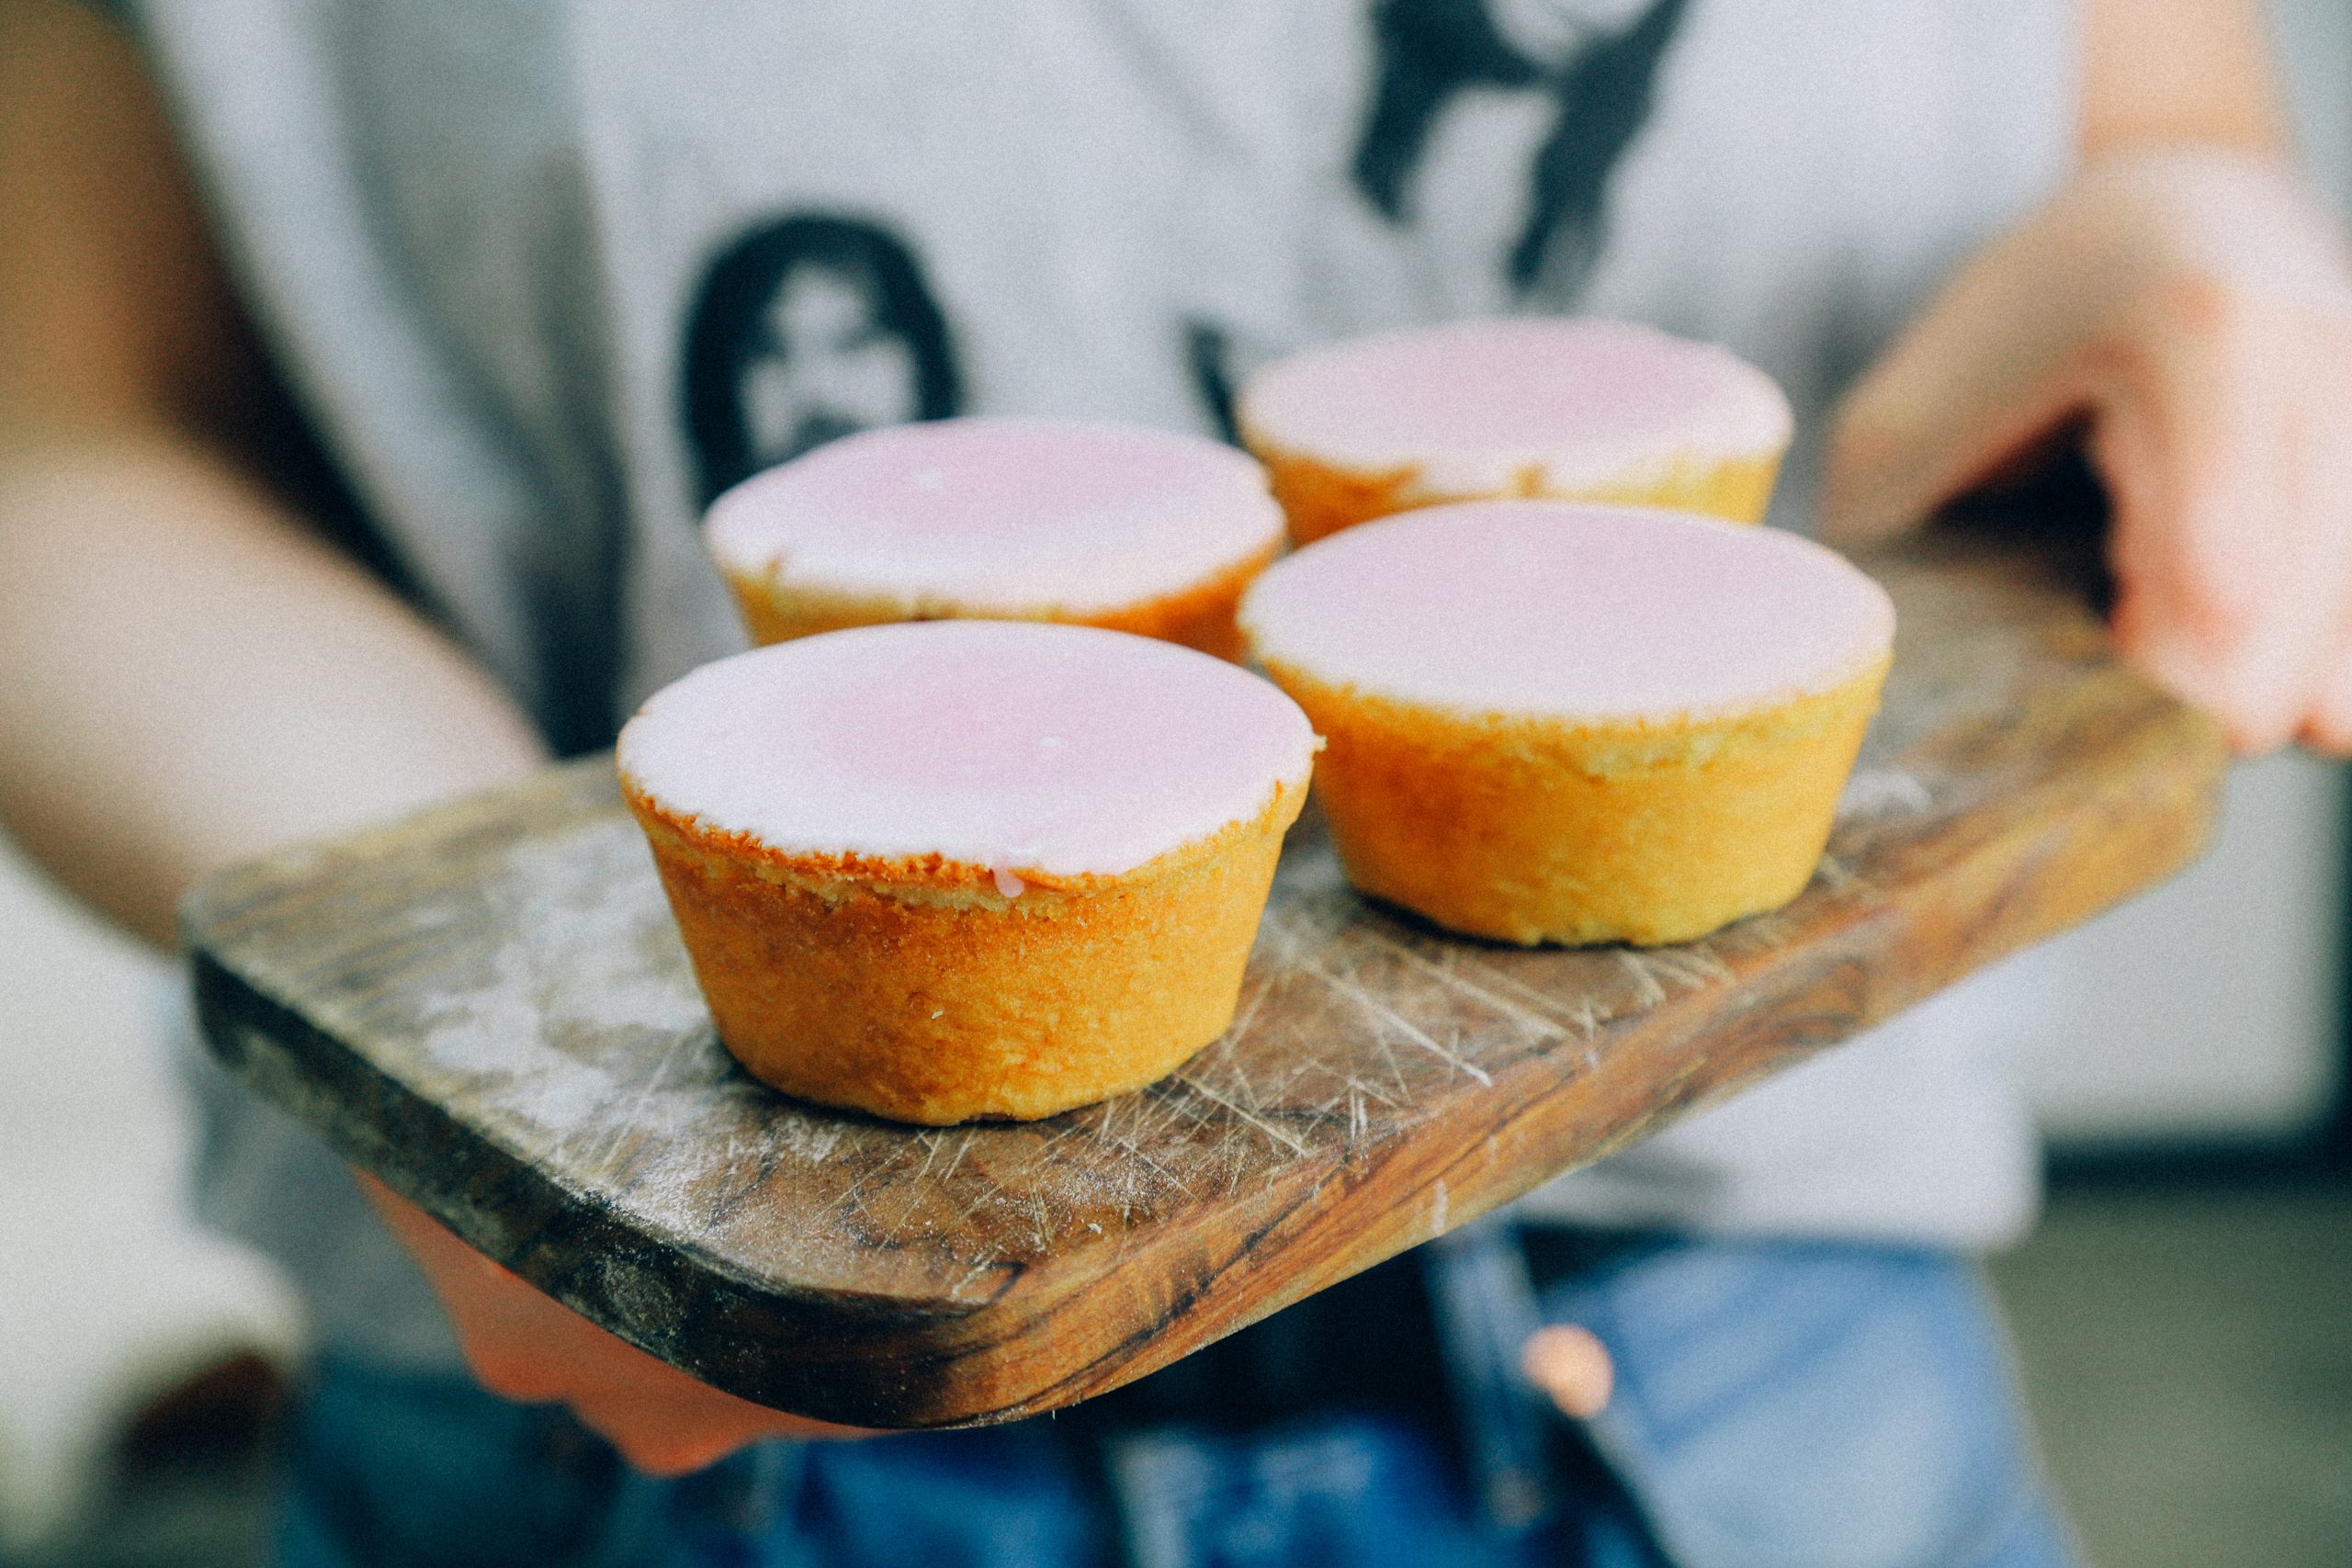 Recept om zelf vegan roze koeken te bakken met fondant